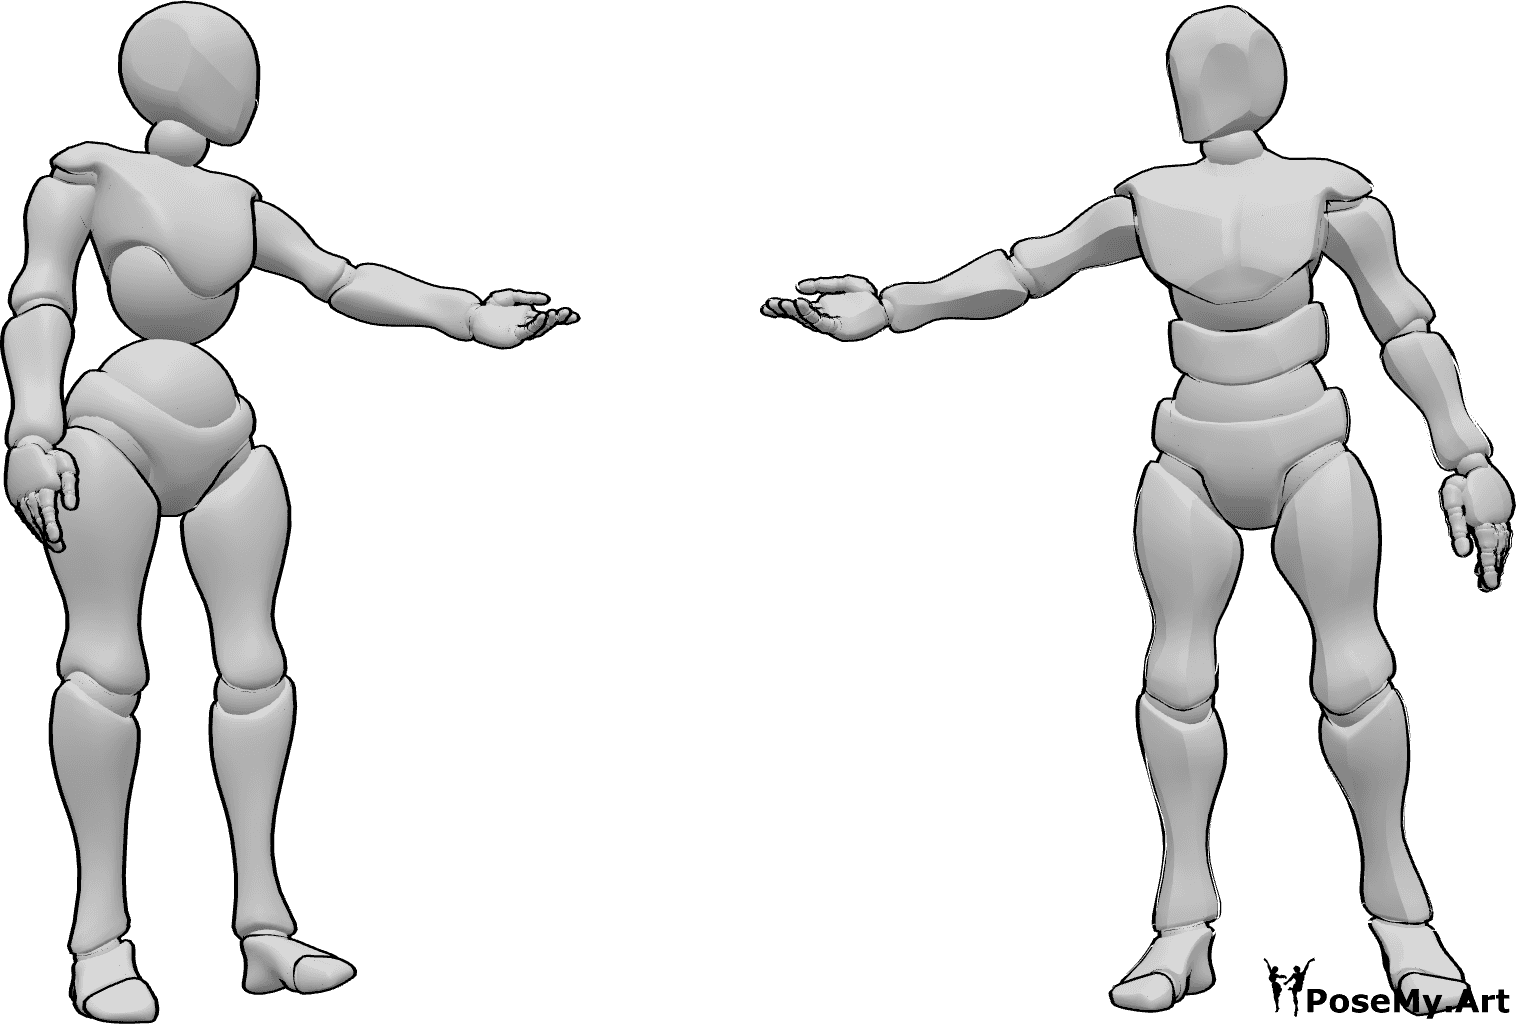 Referencia de poses- Postura de hombre mujer - Mujer y hombre están de pie, se miran y se tienden la mano